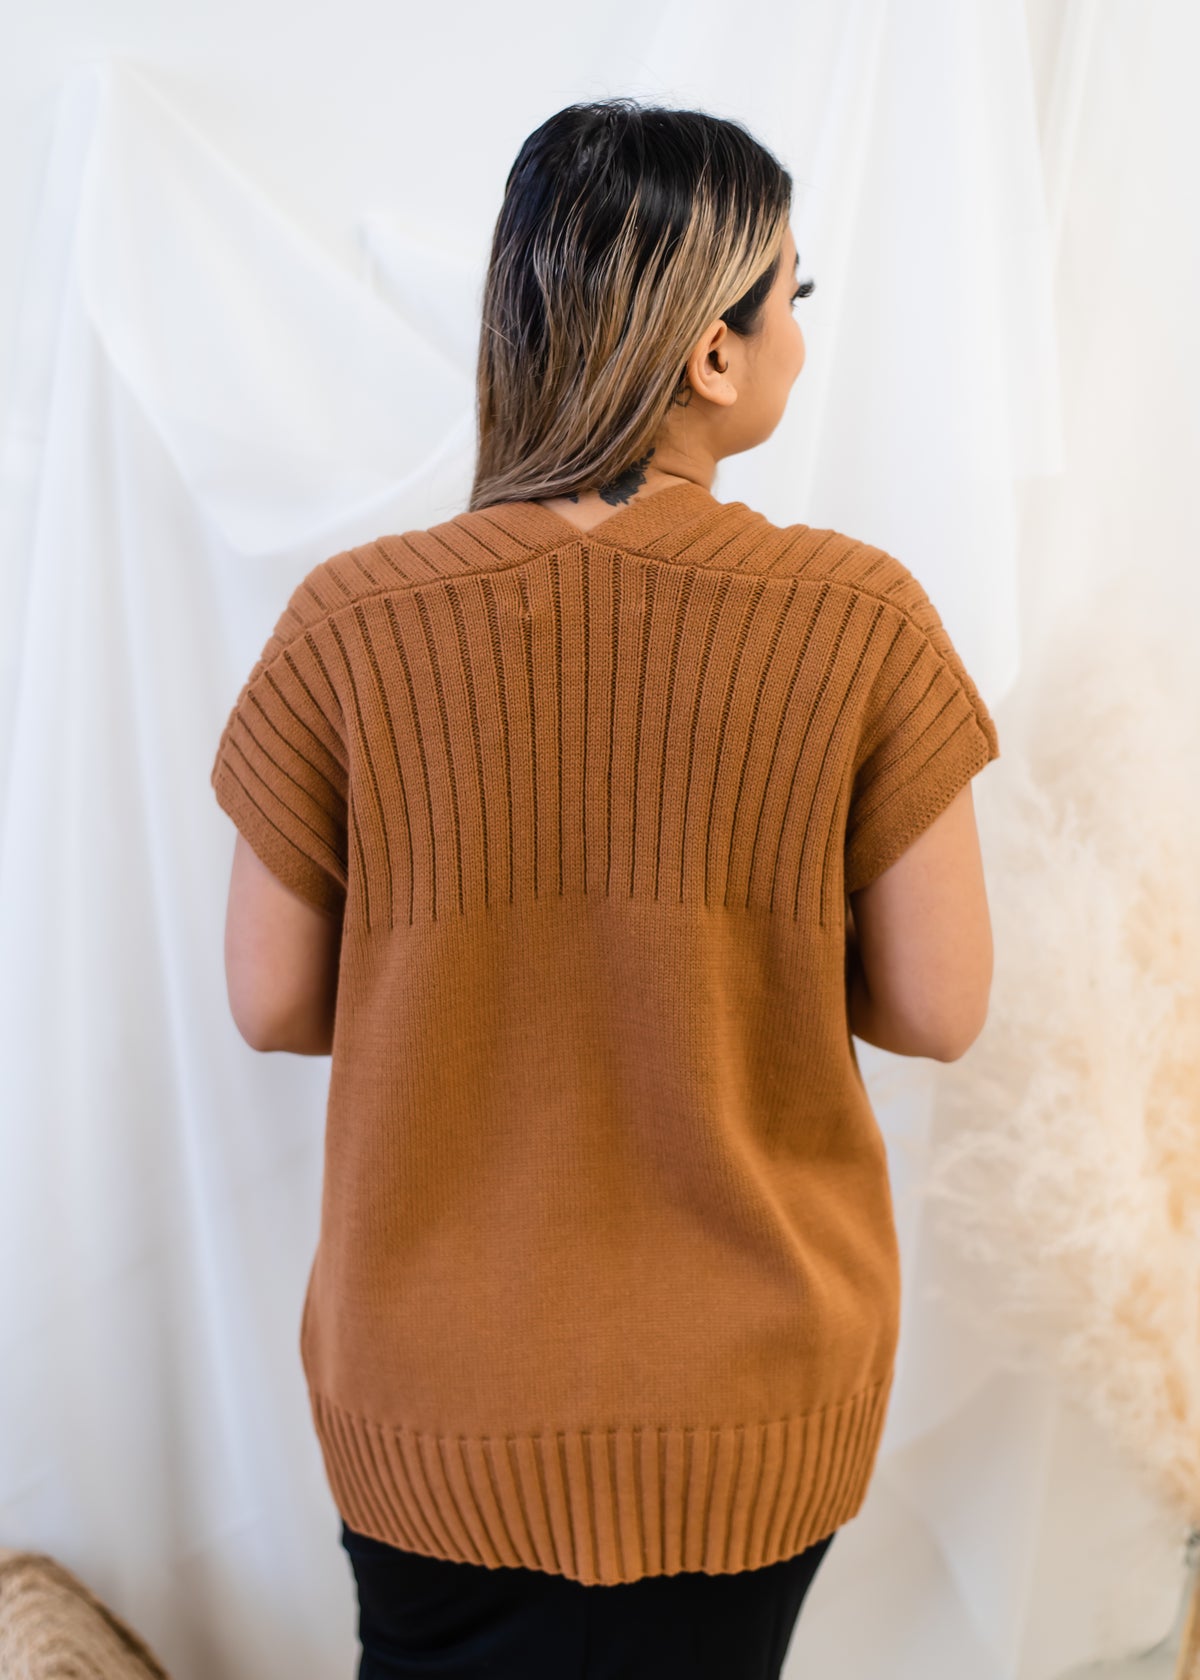 The Desiree Sweater